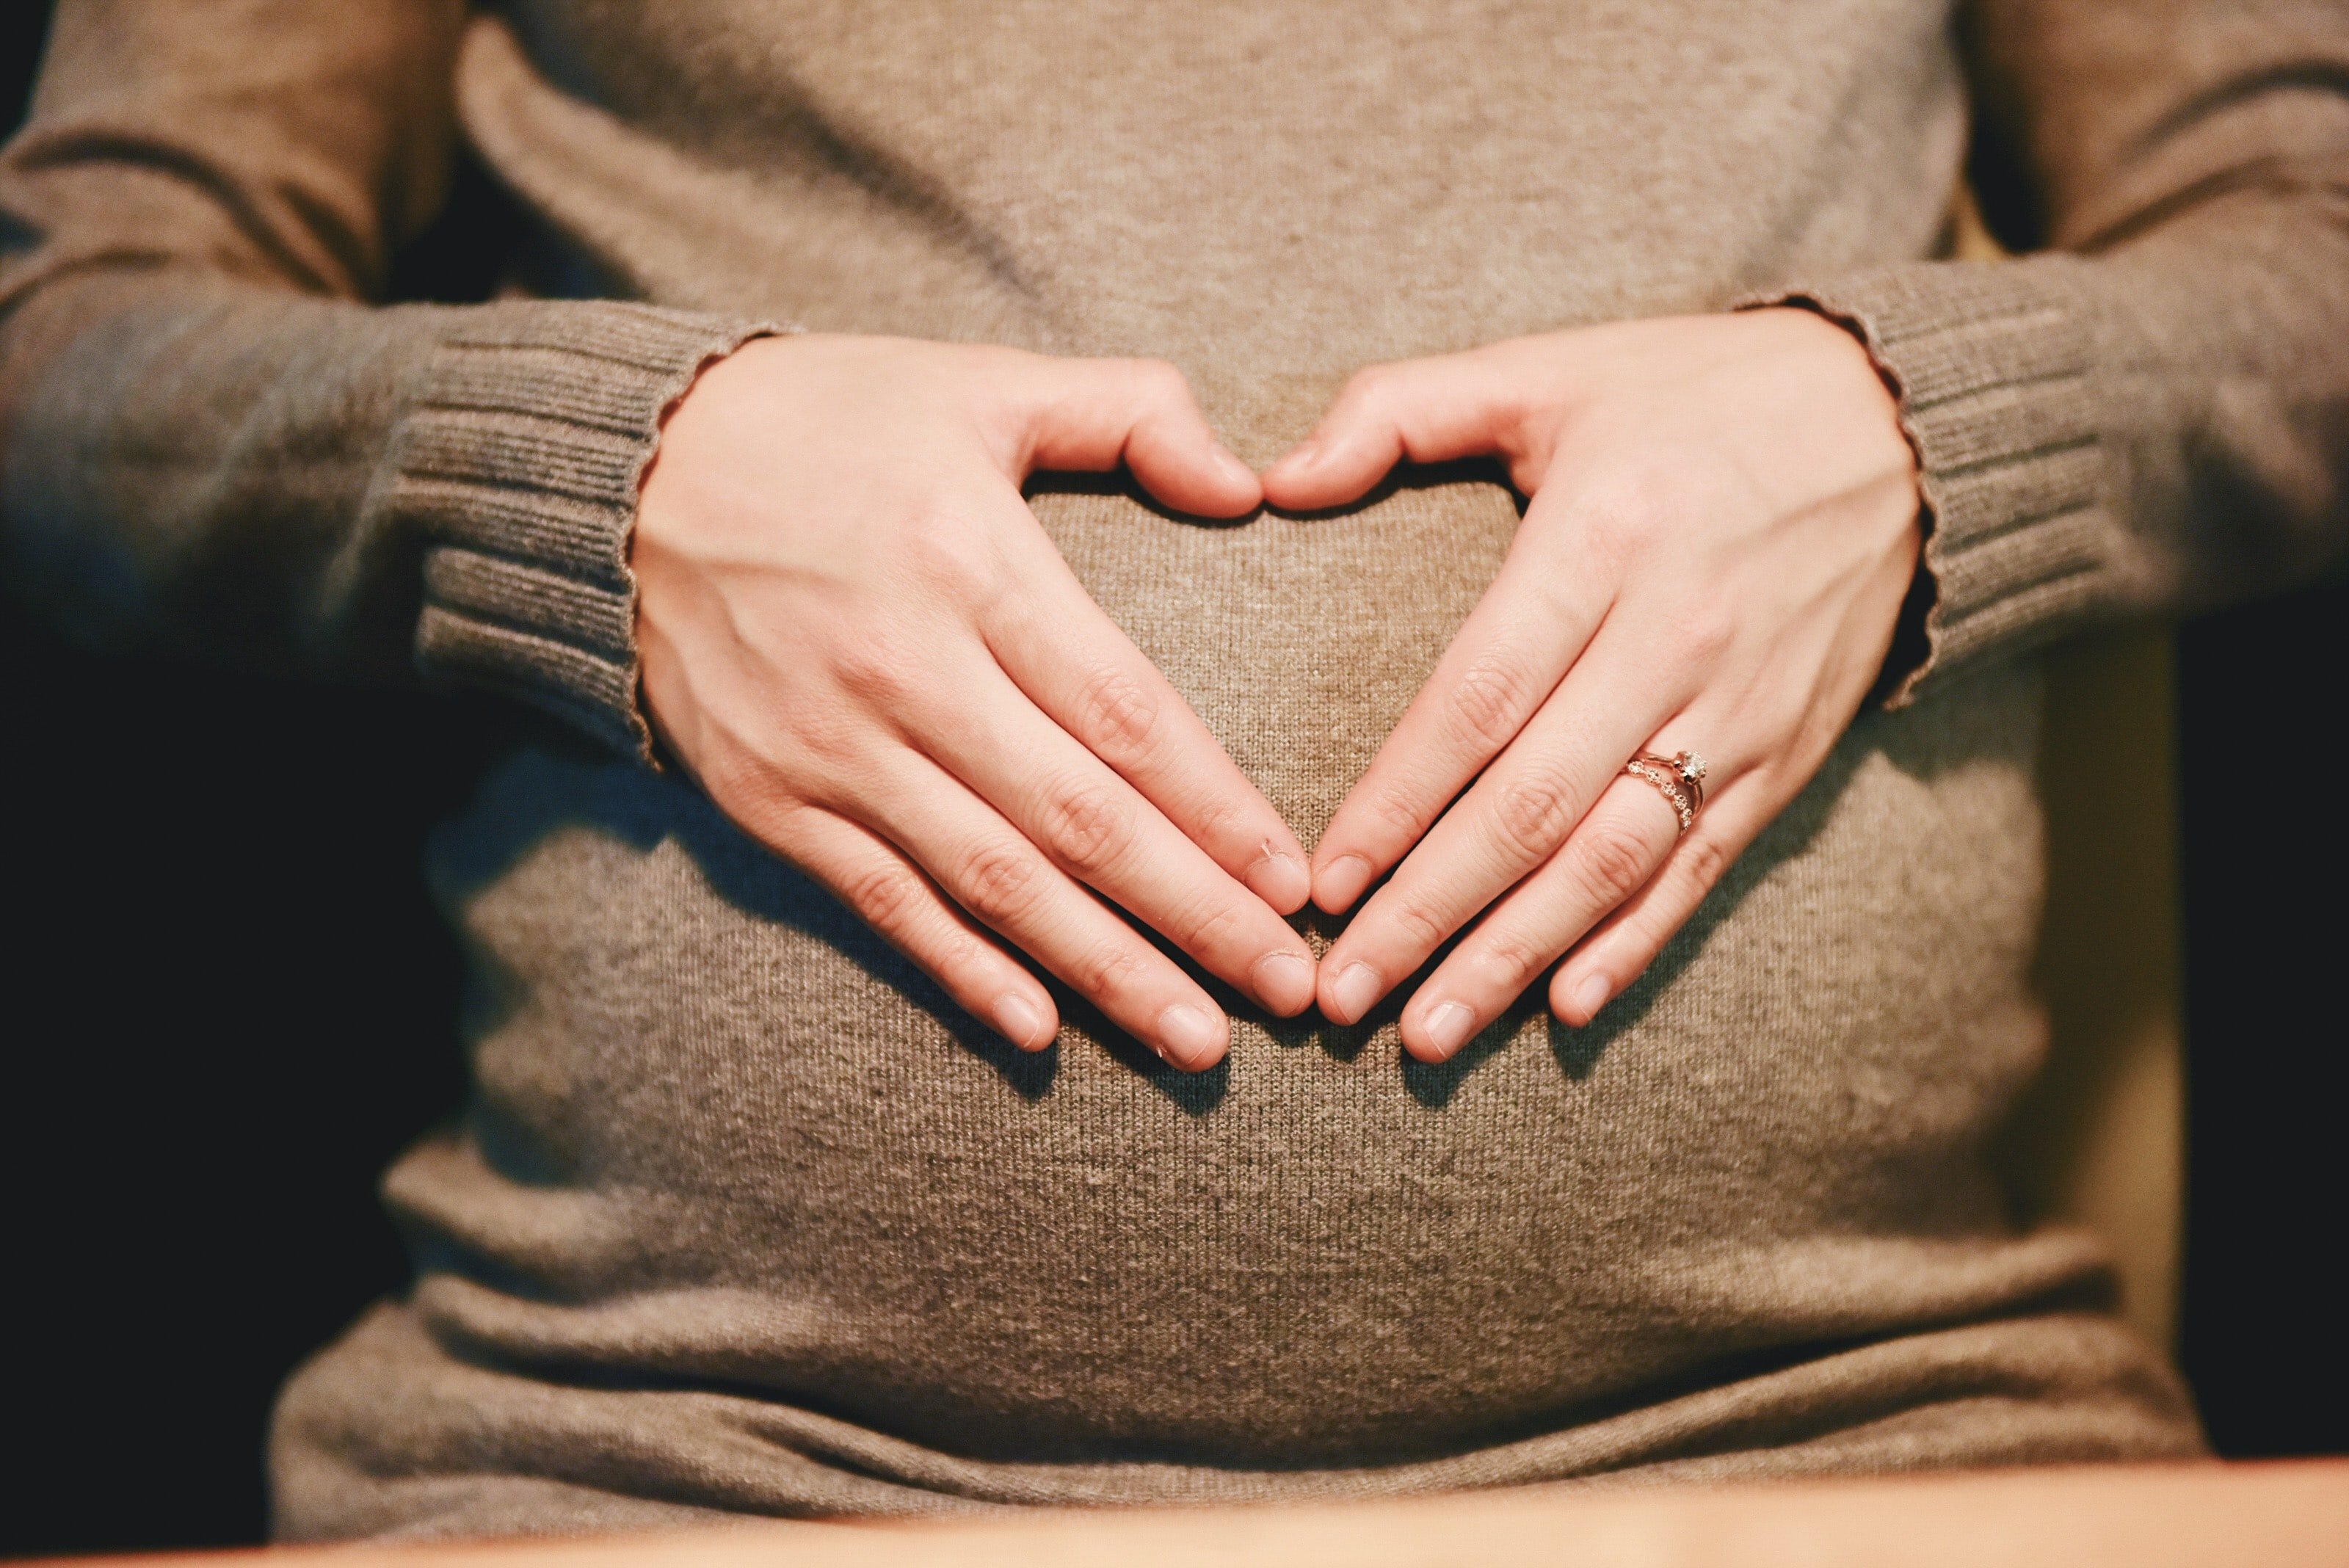 Die Frau wollte erneut schwanger werden, befürchtete jedoch Komplikationen. | Quelle: Unsplash